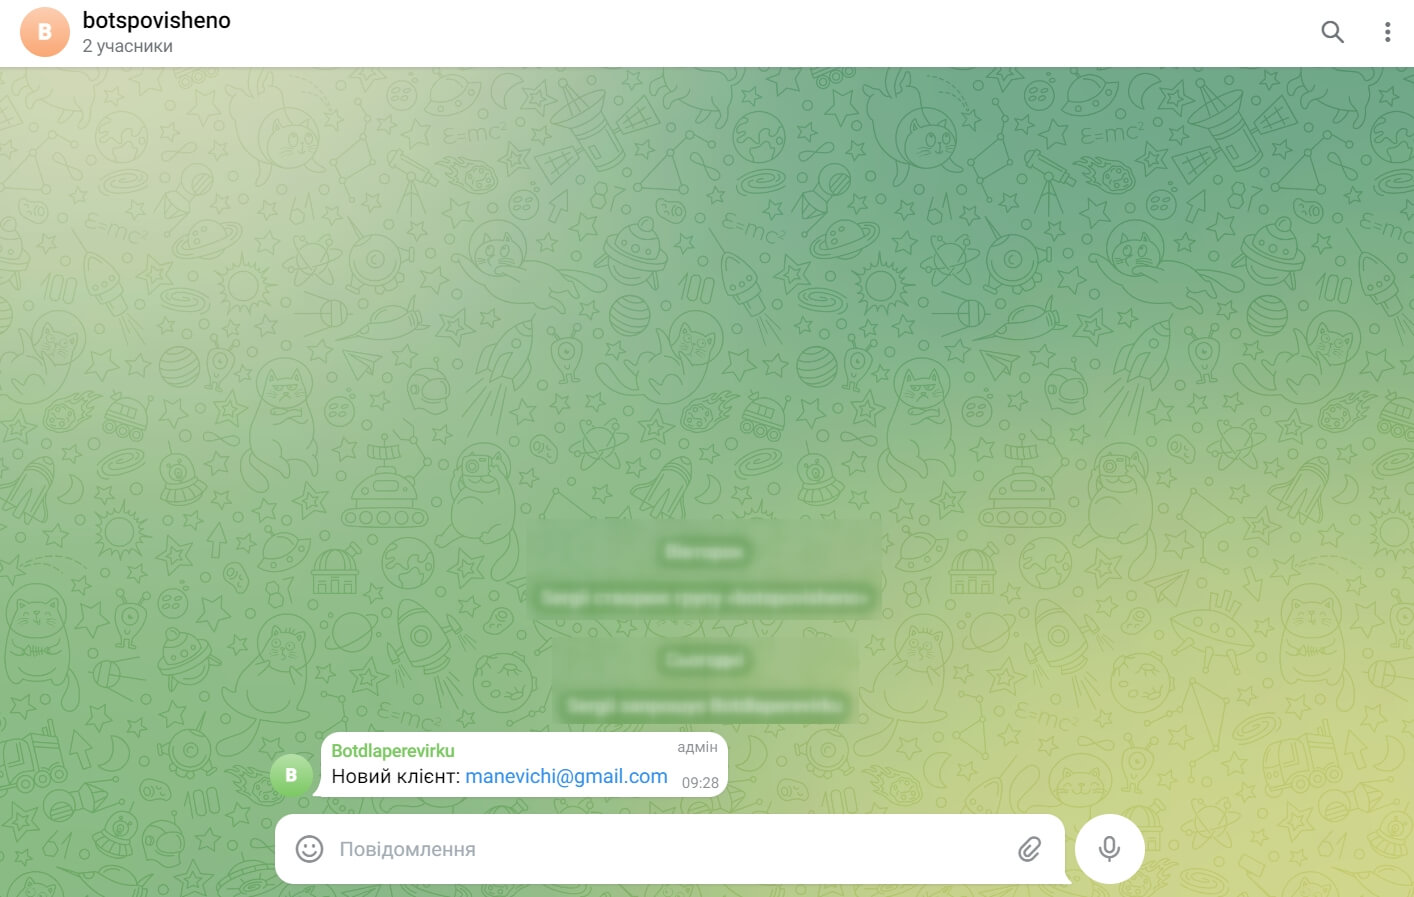 Сповіщення в Telegram-групі з імейлом клієнта
